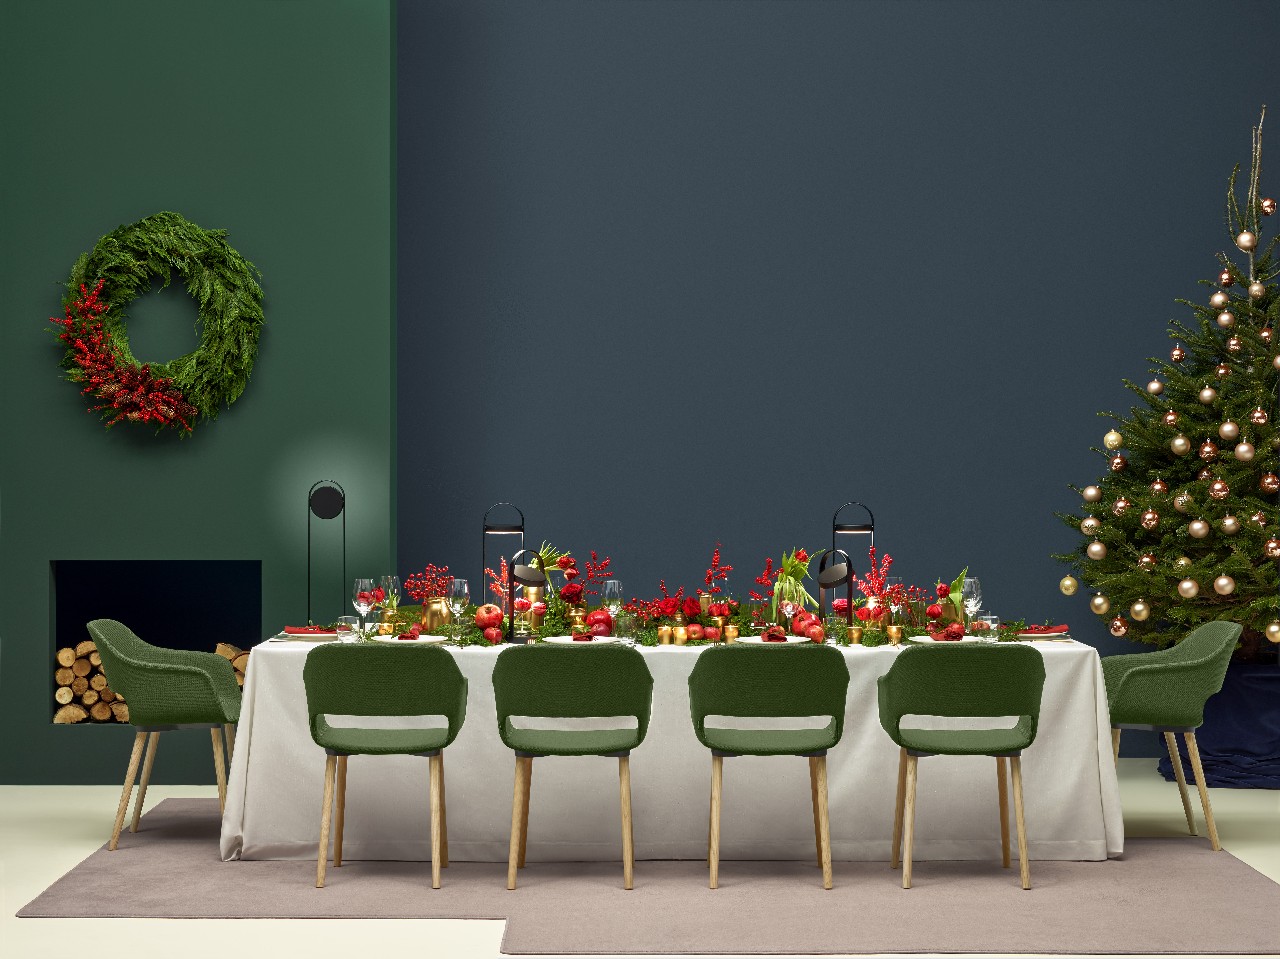 Gli arredi Pedrali ispirano gli allestimenti e le decorazioni per le festività natalizie, le foto